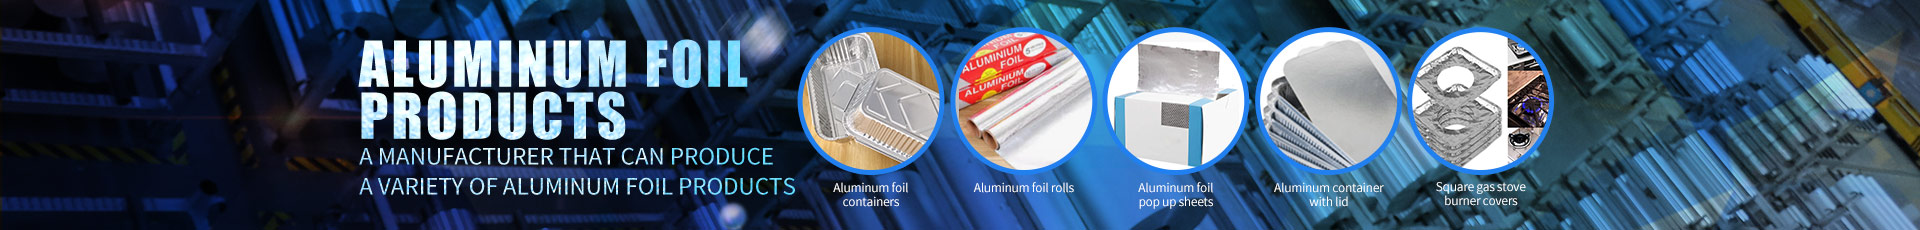 Aluminum Foil Containers